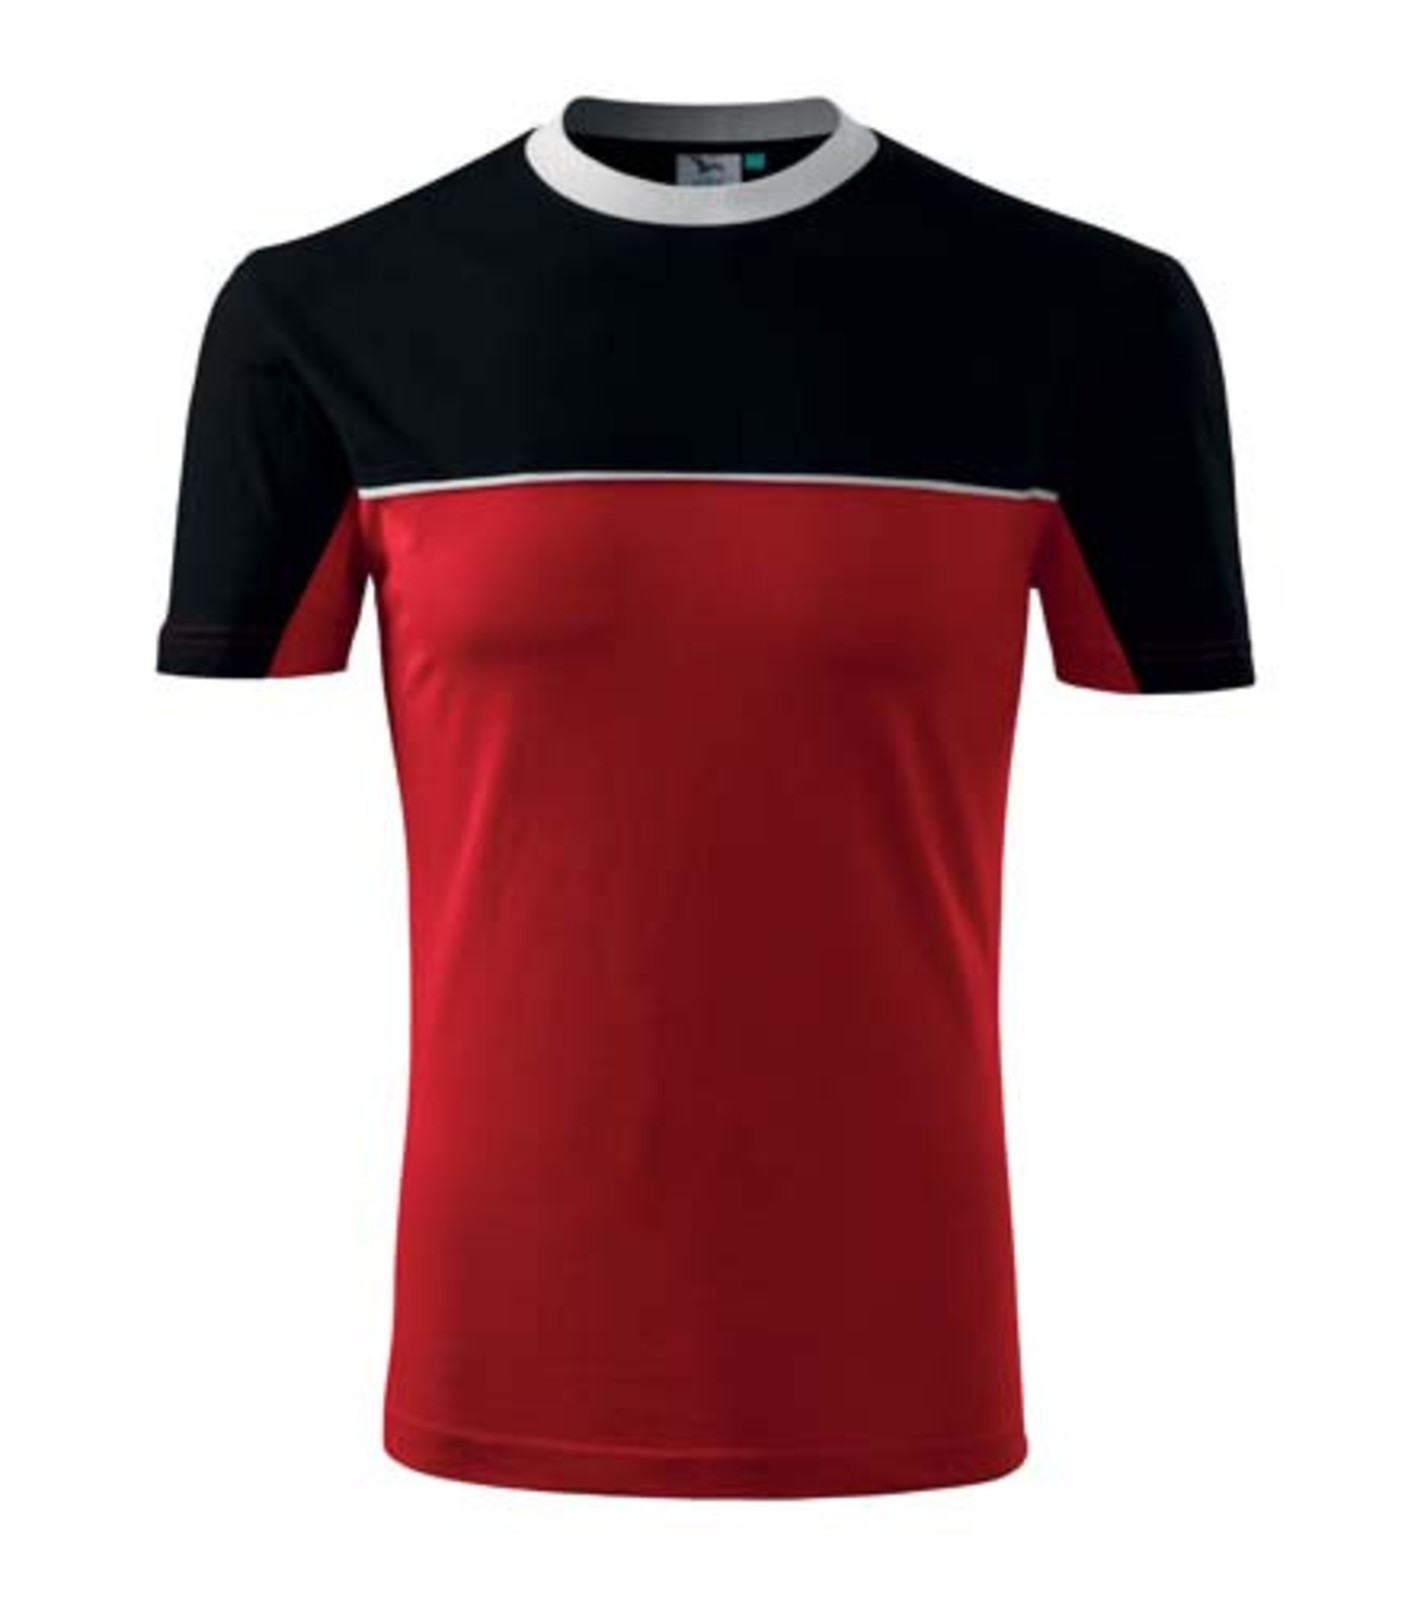 Unisex tričko Rimeck Colormix 109 - veľkosť: S, farba: červená/čierna